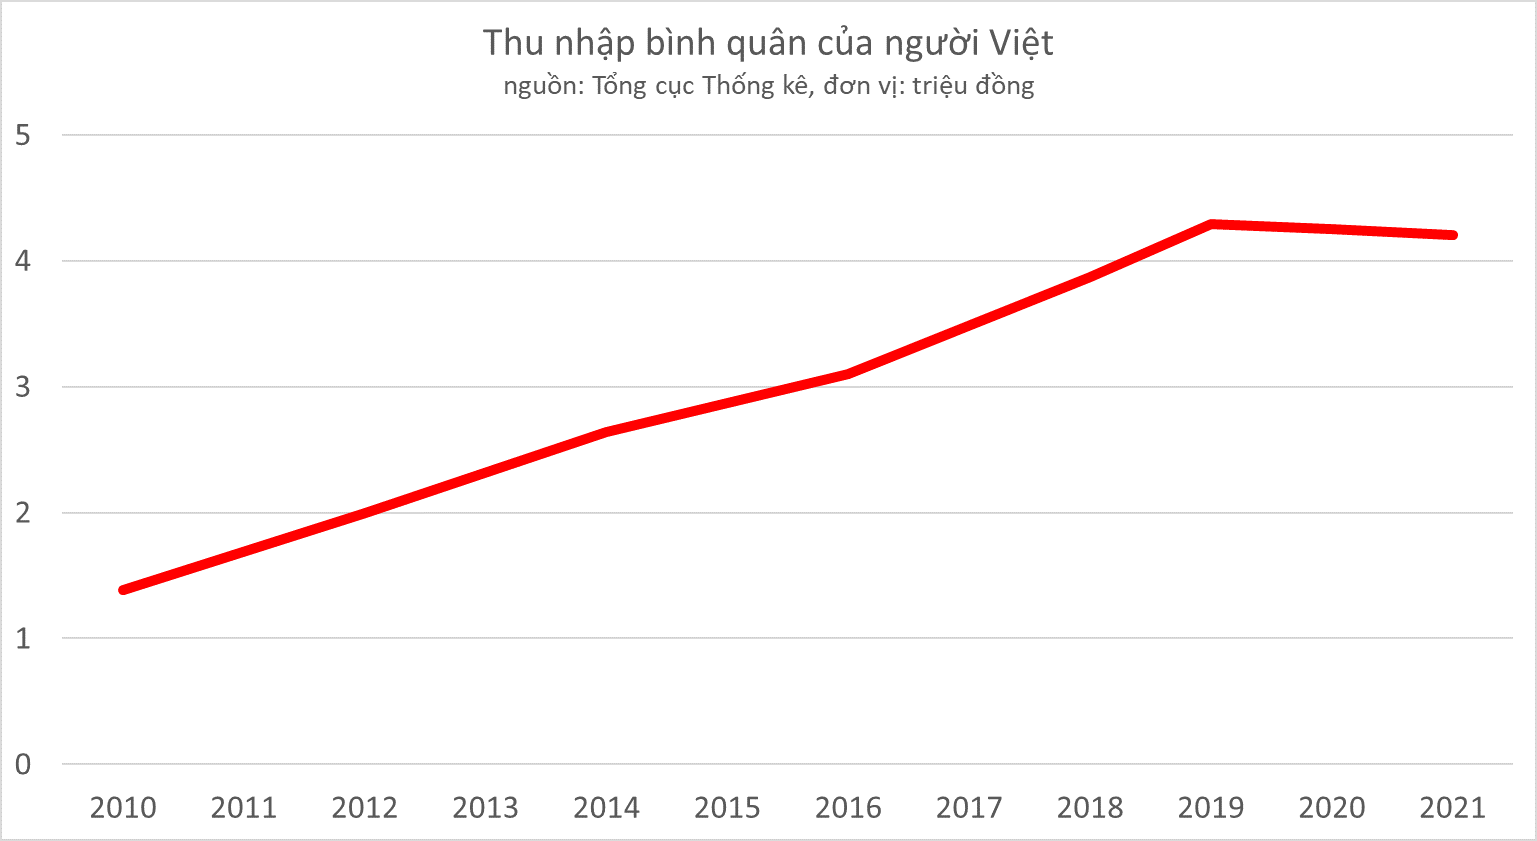 Thu nhập bình quân của người Việt năm tiếp tục giảm mới nhất